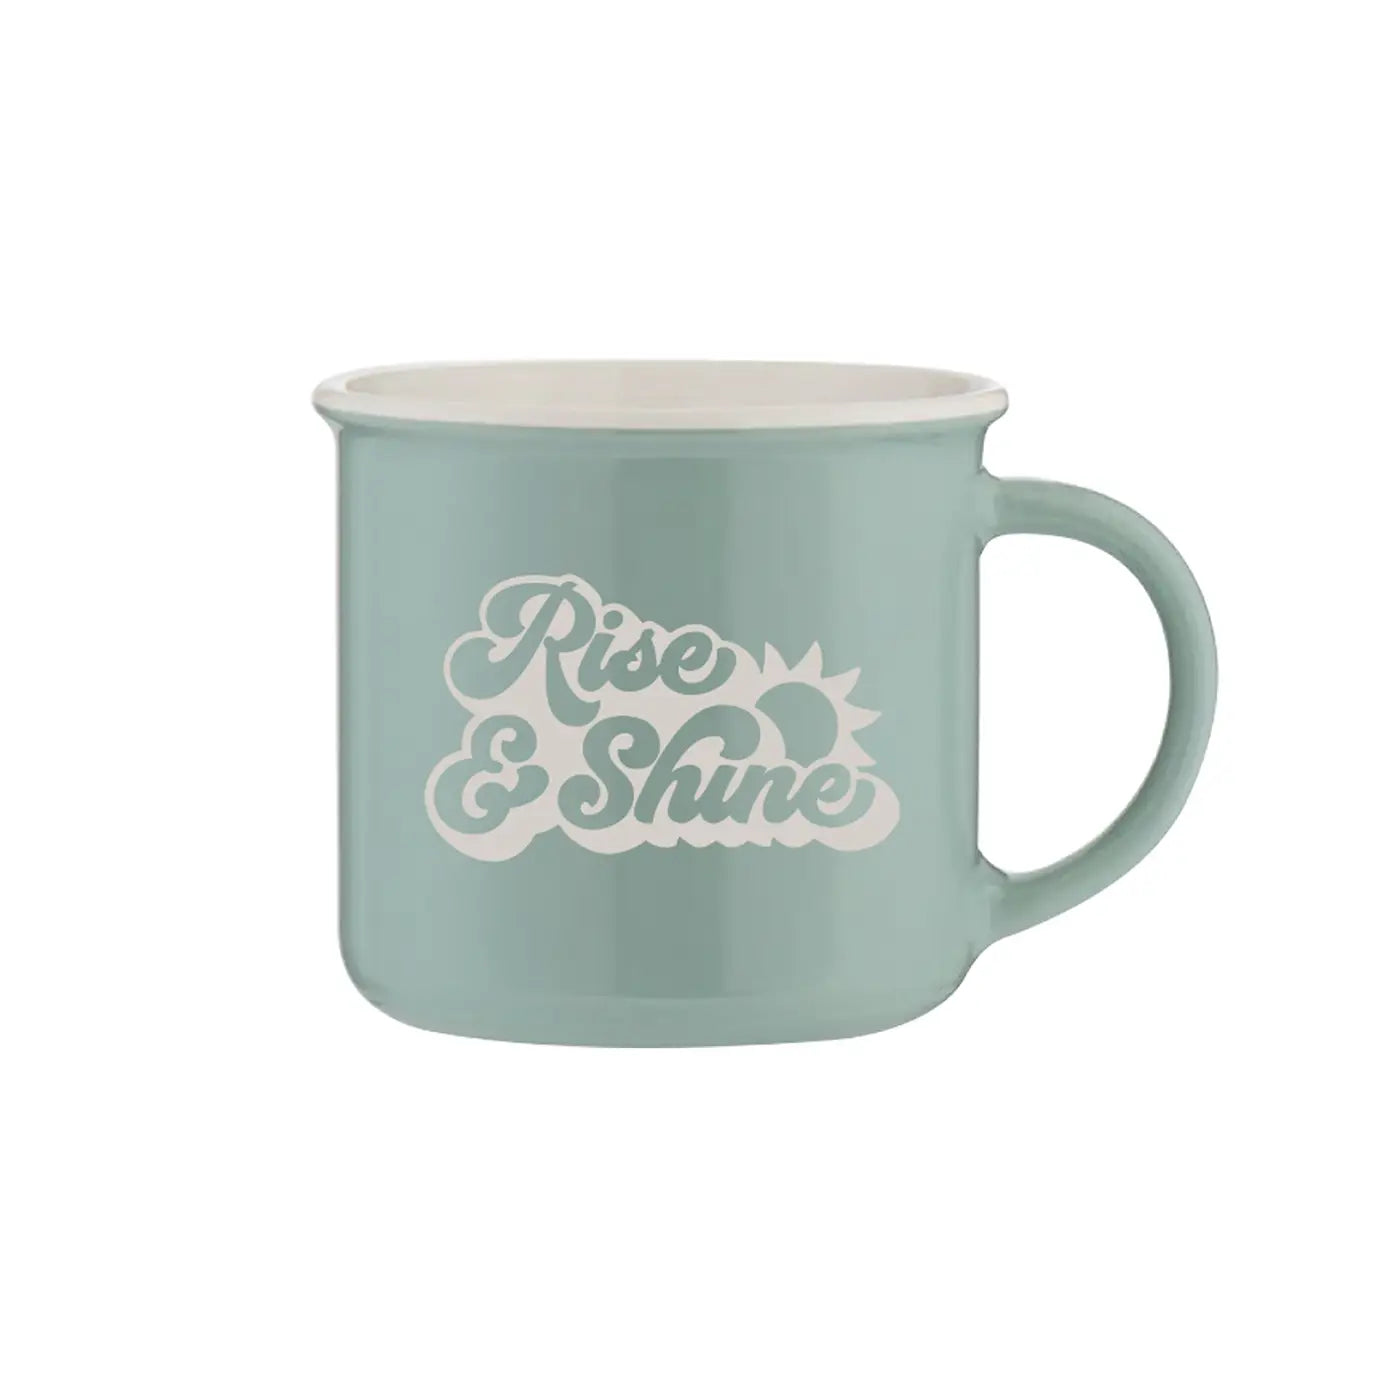 rise & shine mug